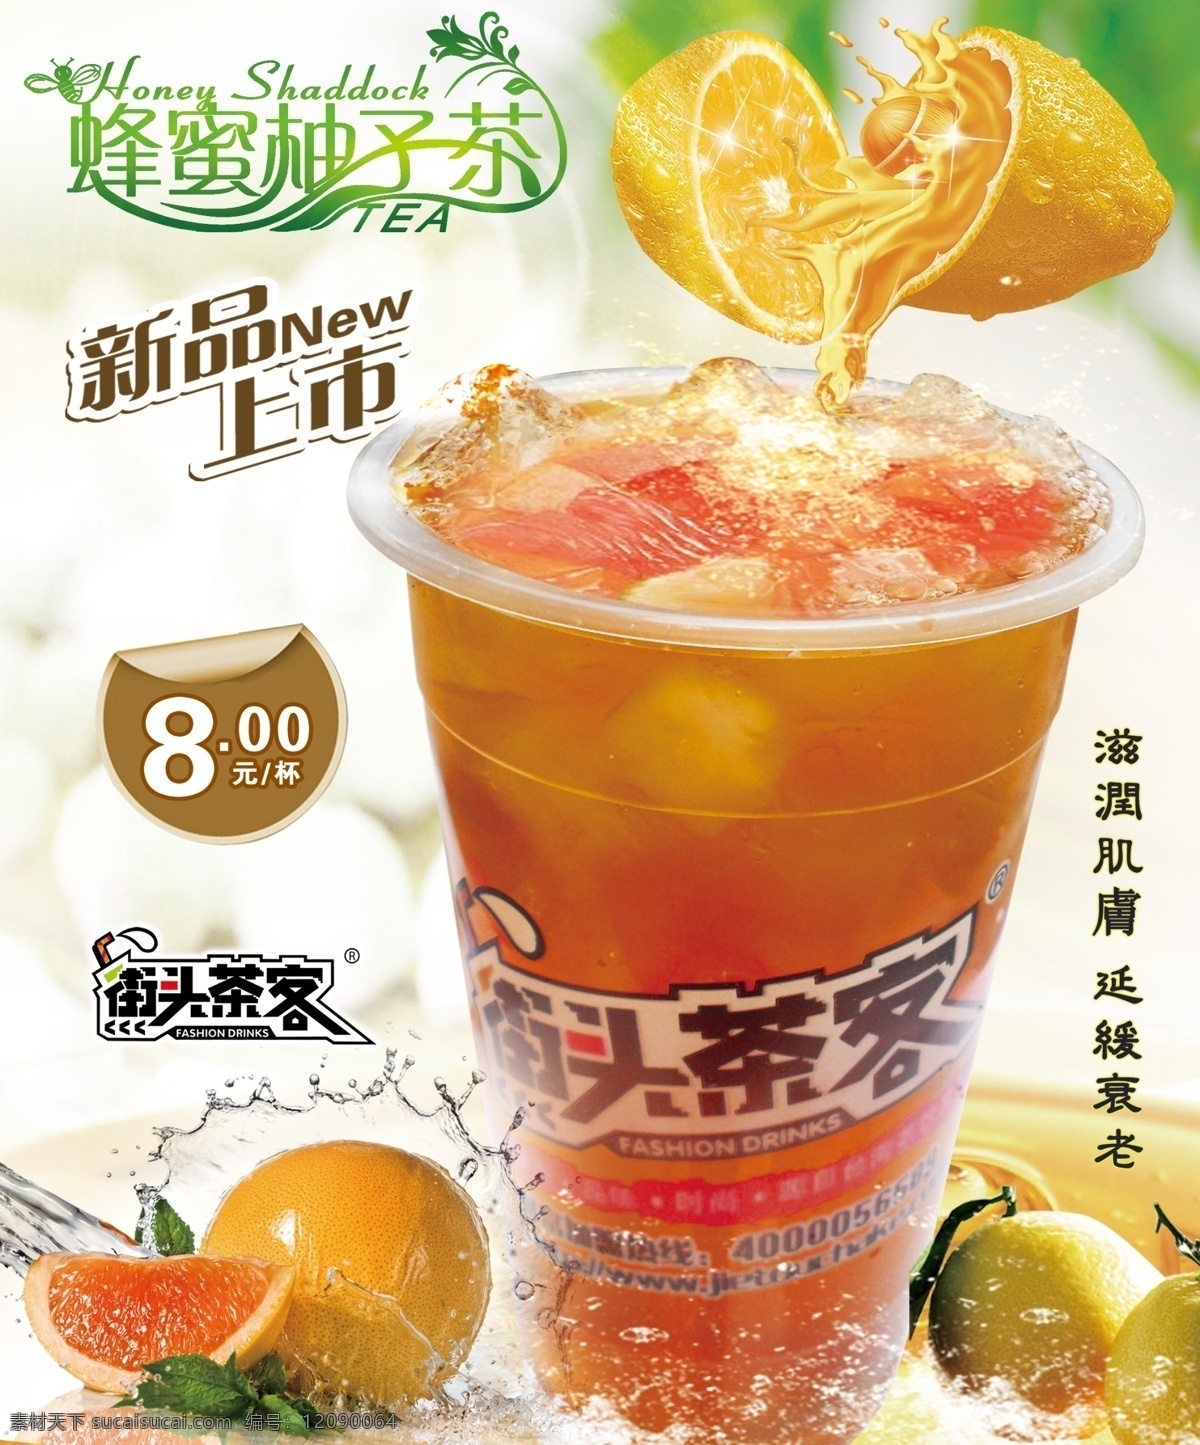 蜜蜂柚子茶 柚子茶 柚子 蜜蜂 蜂蜜 冰饮 冷饮海报 海报 茶品海报 夏季冰饮 冰 水 新品上市